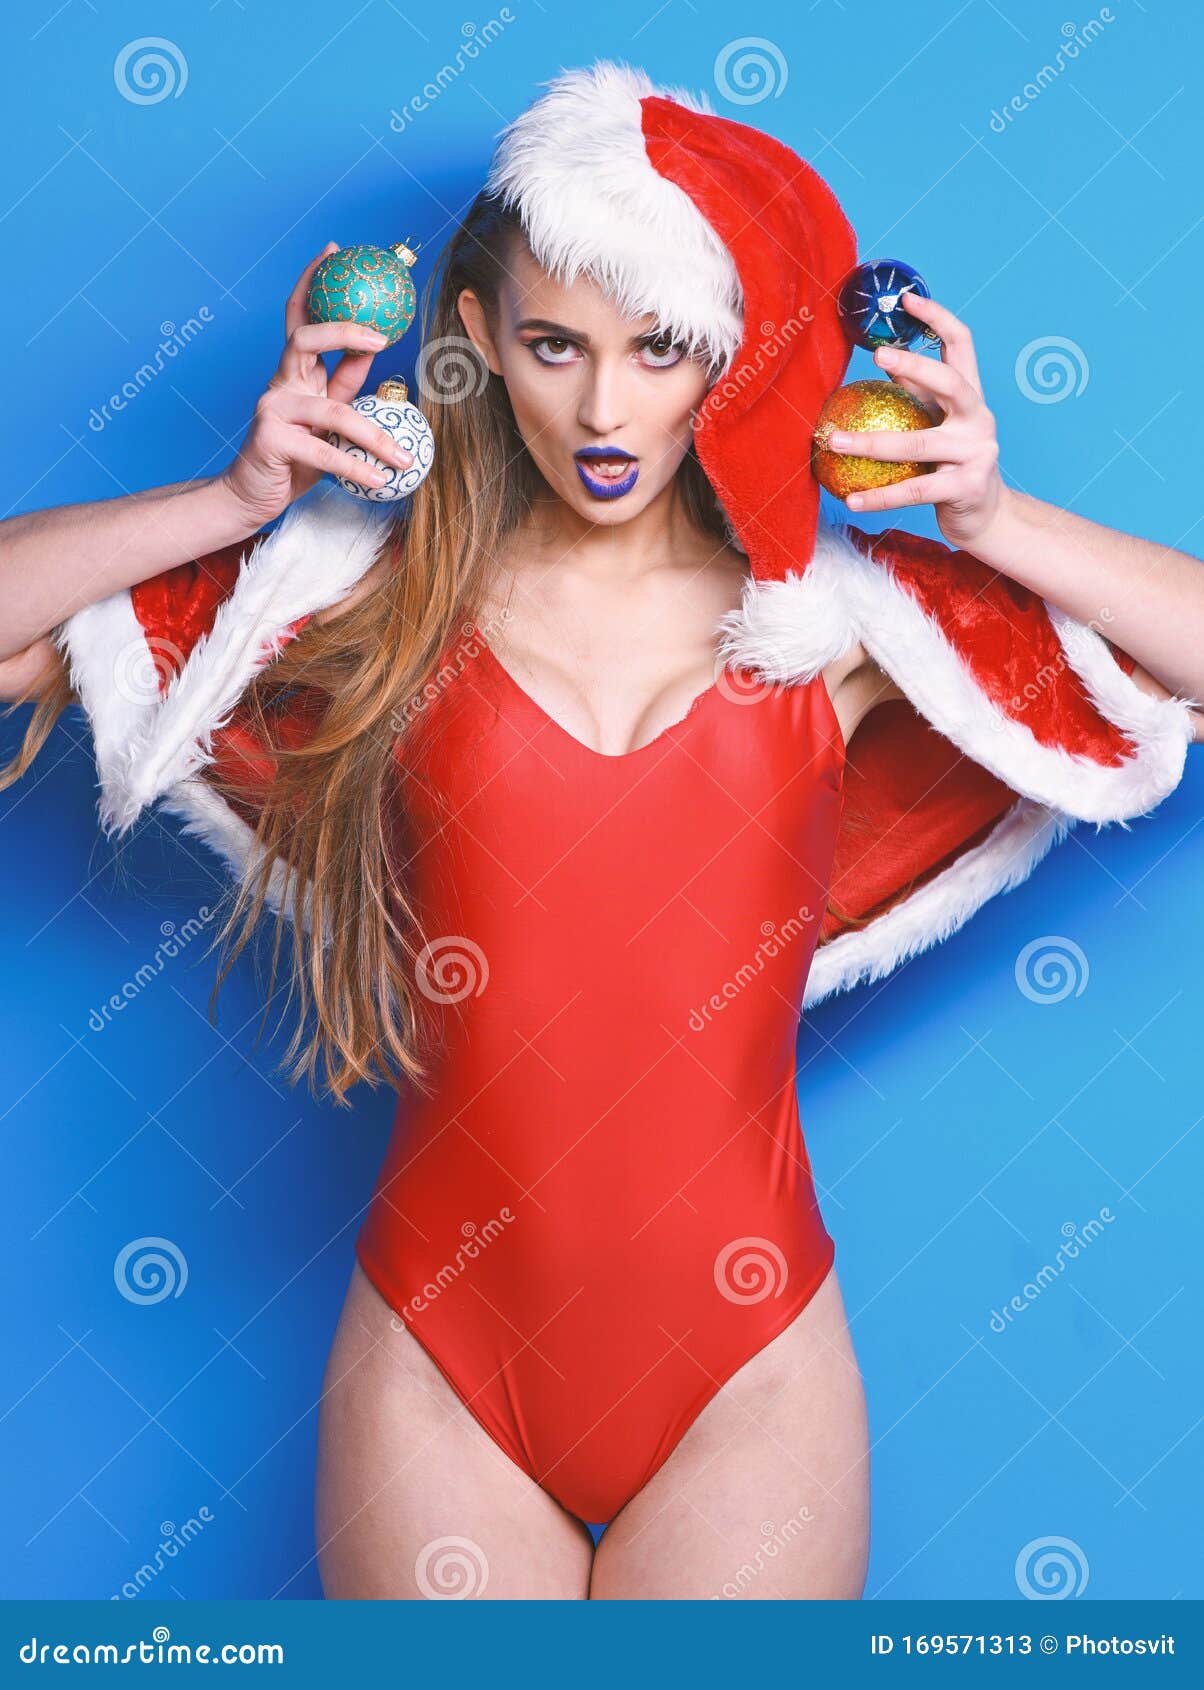 Mujer Atractiva Santa Celebra El Año Nuevo Desfile De Navidad De Santa Niña Disfraces  Sexys De Navidad Santa Chica Imagen de archivo - Imagen de bola, rojo:  169571313